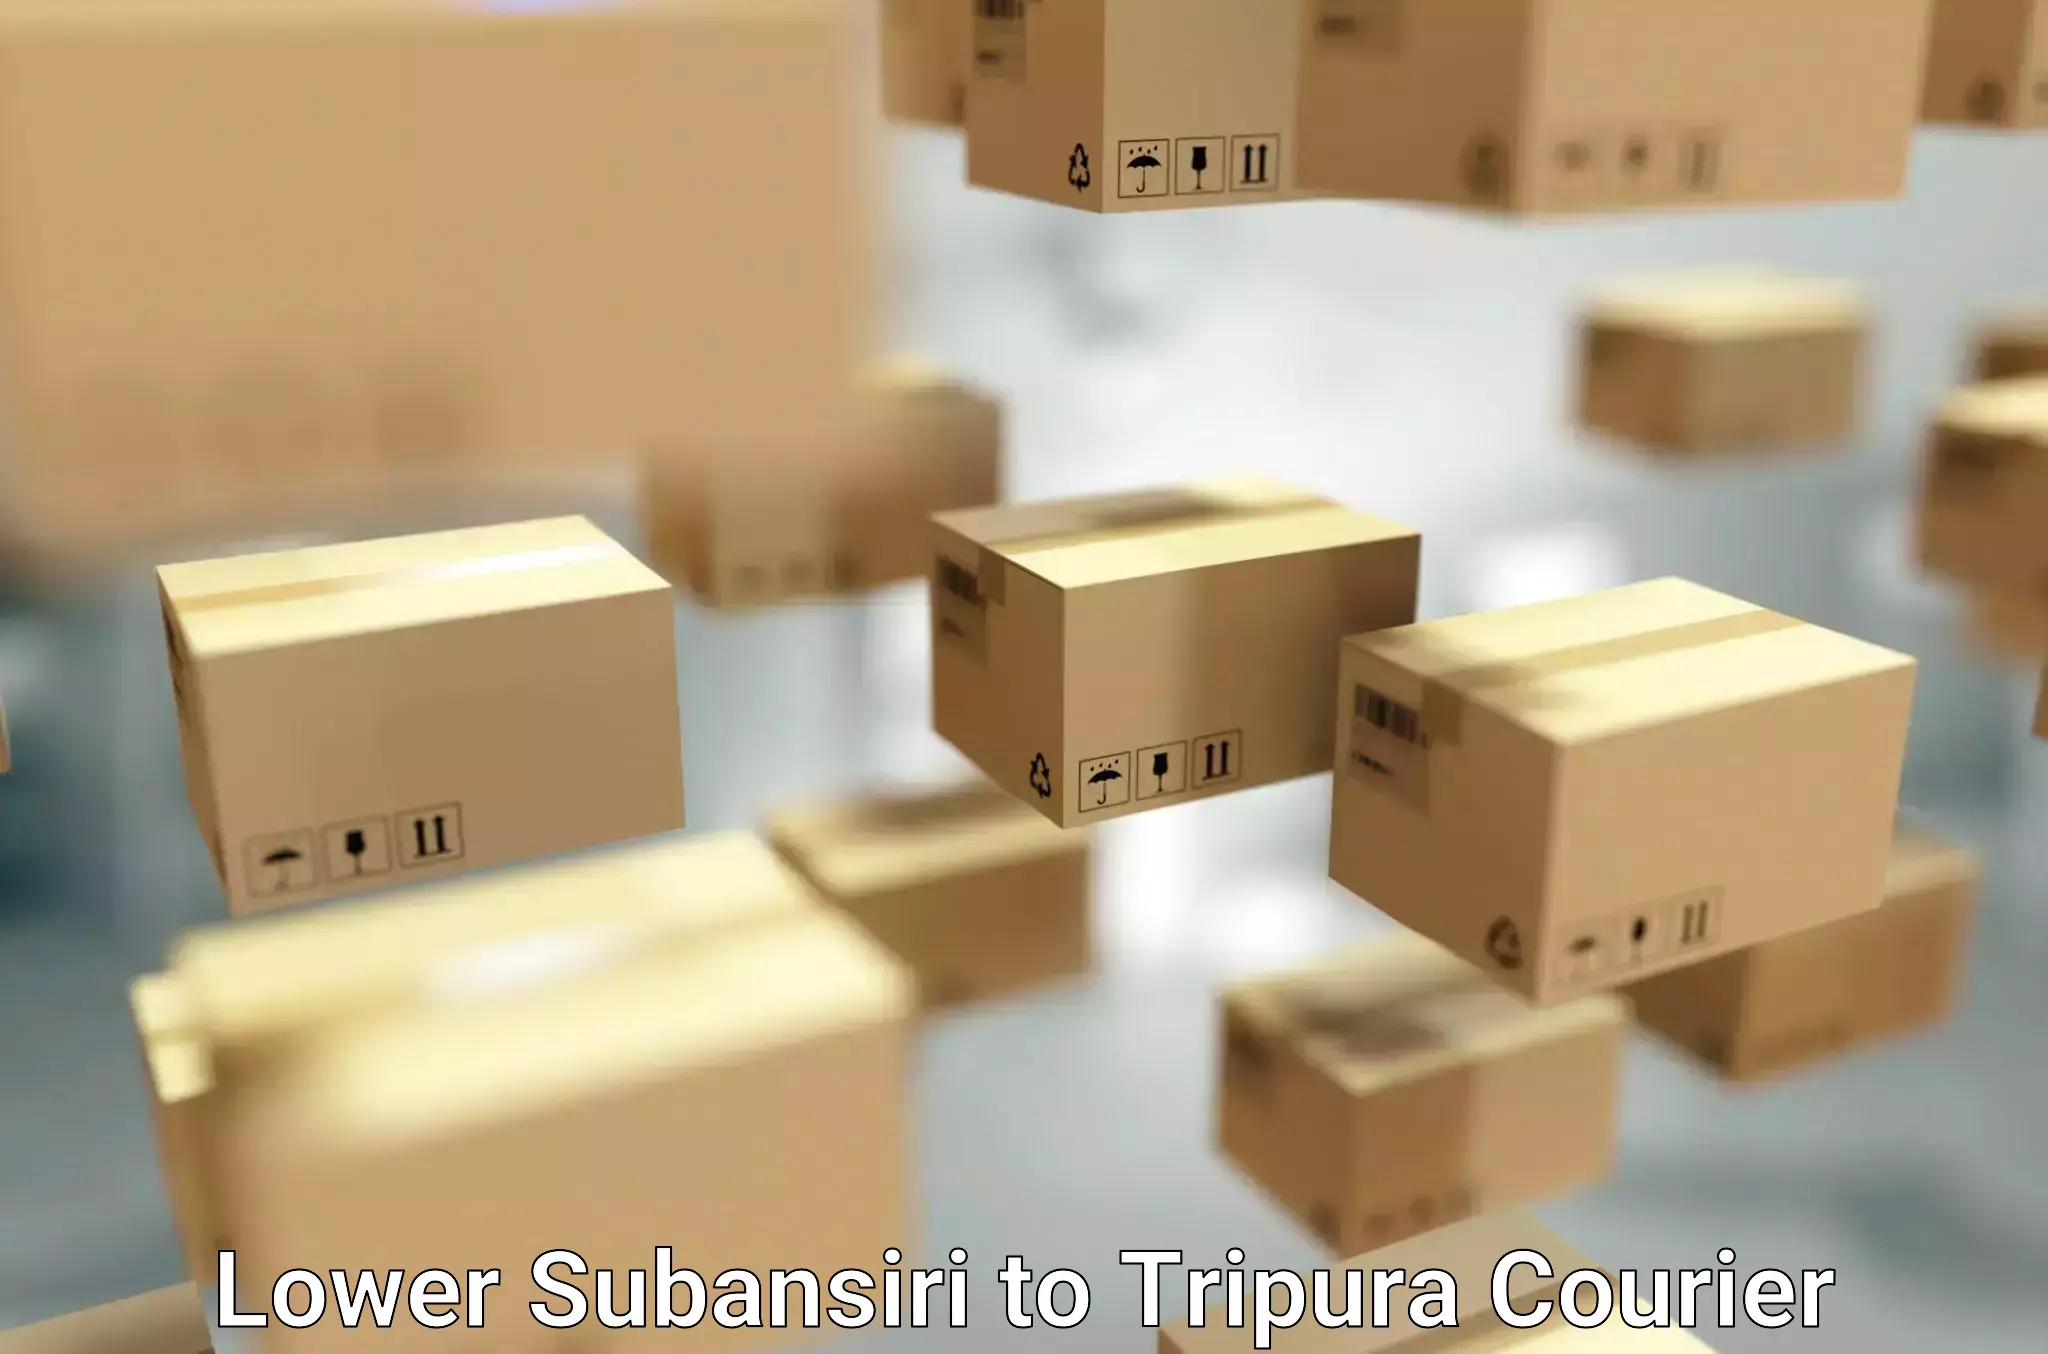 Quality moving company Lower Subansiri to Udaipur Tripura